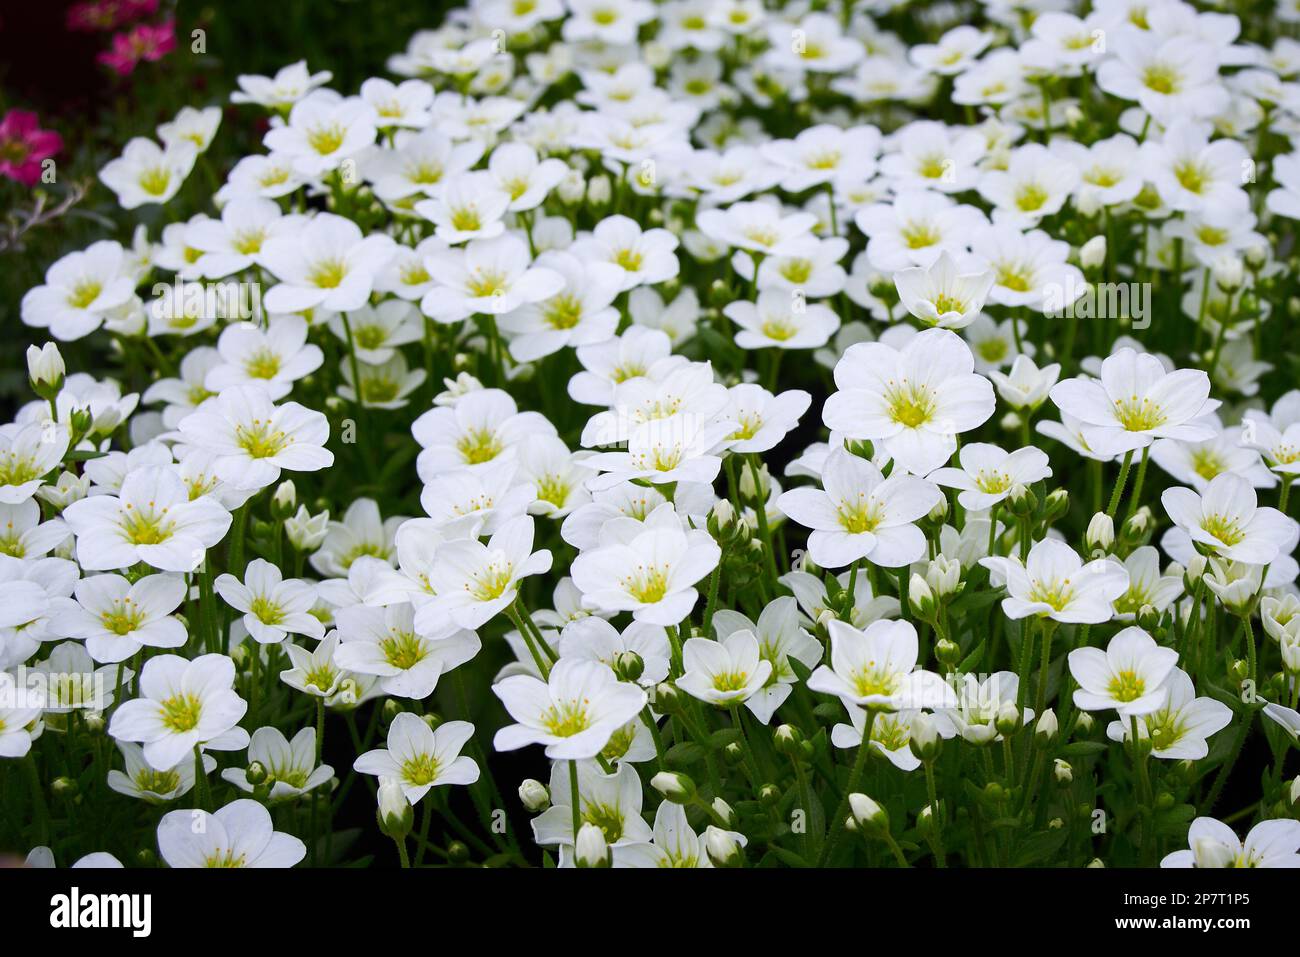 Saxifraga small white flowers, Saxifraga arendsii Adebar Saxifragaceae family perennial flowering plant Stock Photo